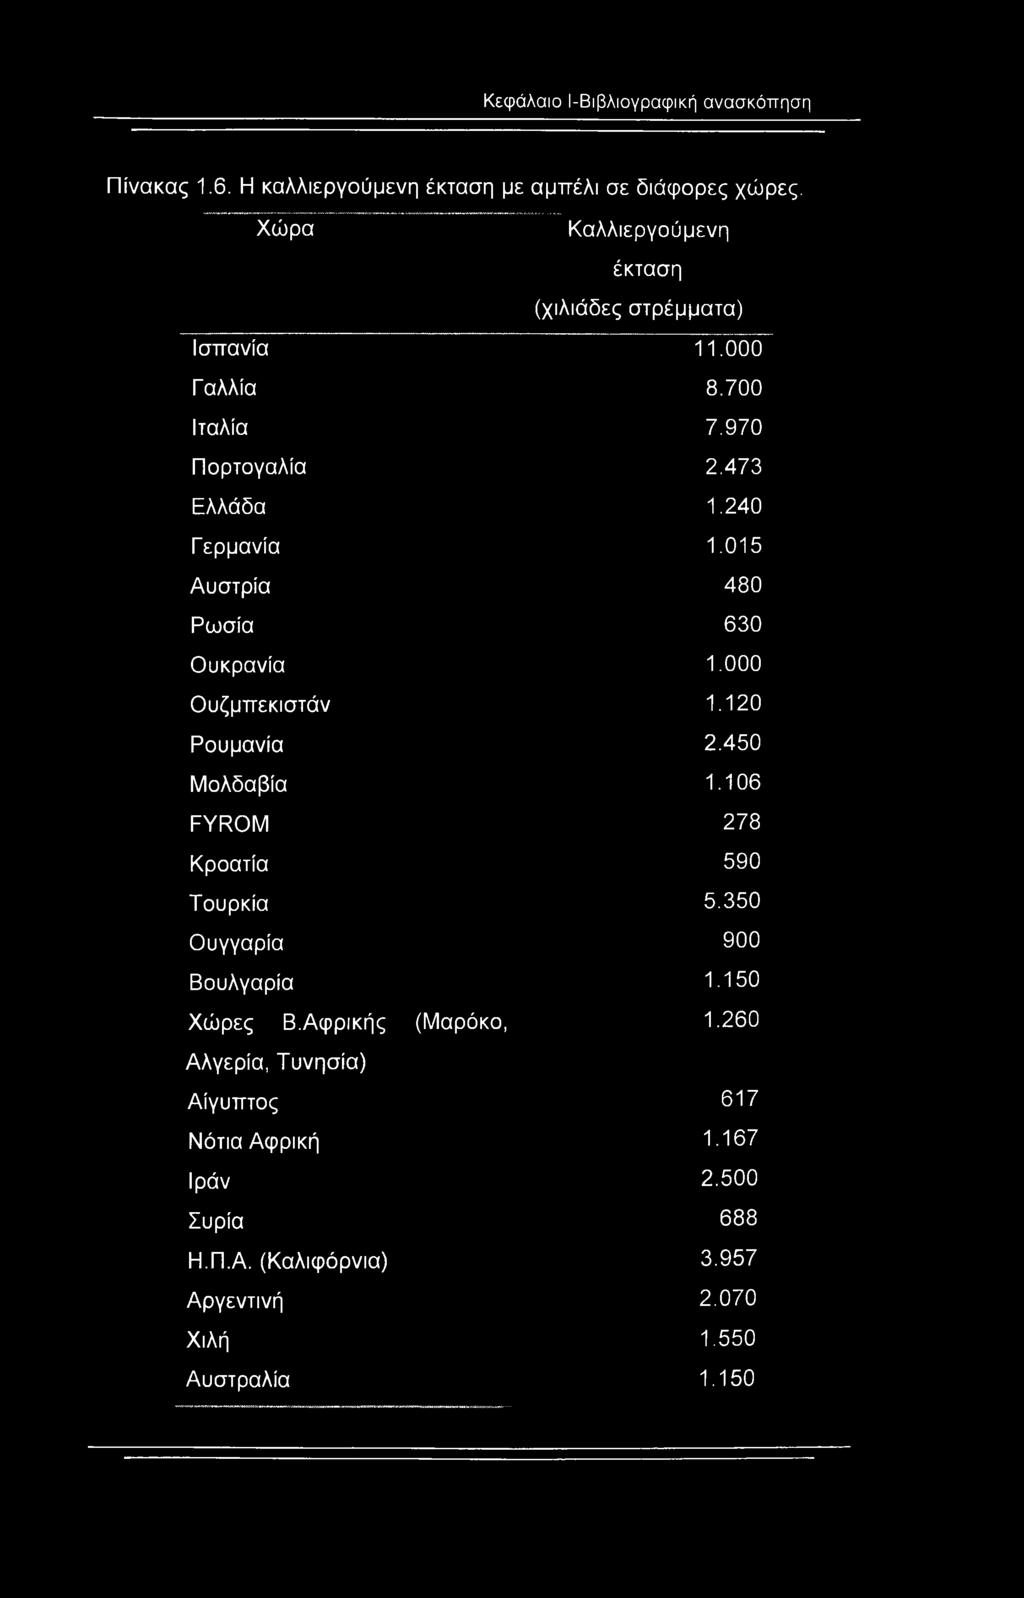 015 Αυστρία 480 Ρωσία 630 Ουκρανία 1.000 Ουζμπεκιστάν 1.120 Ρουμανία 2.450 Μολδαβία 1.106 FYROM 278 Κροατία 590 Τουρκία 5.